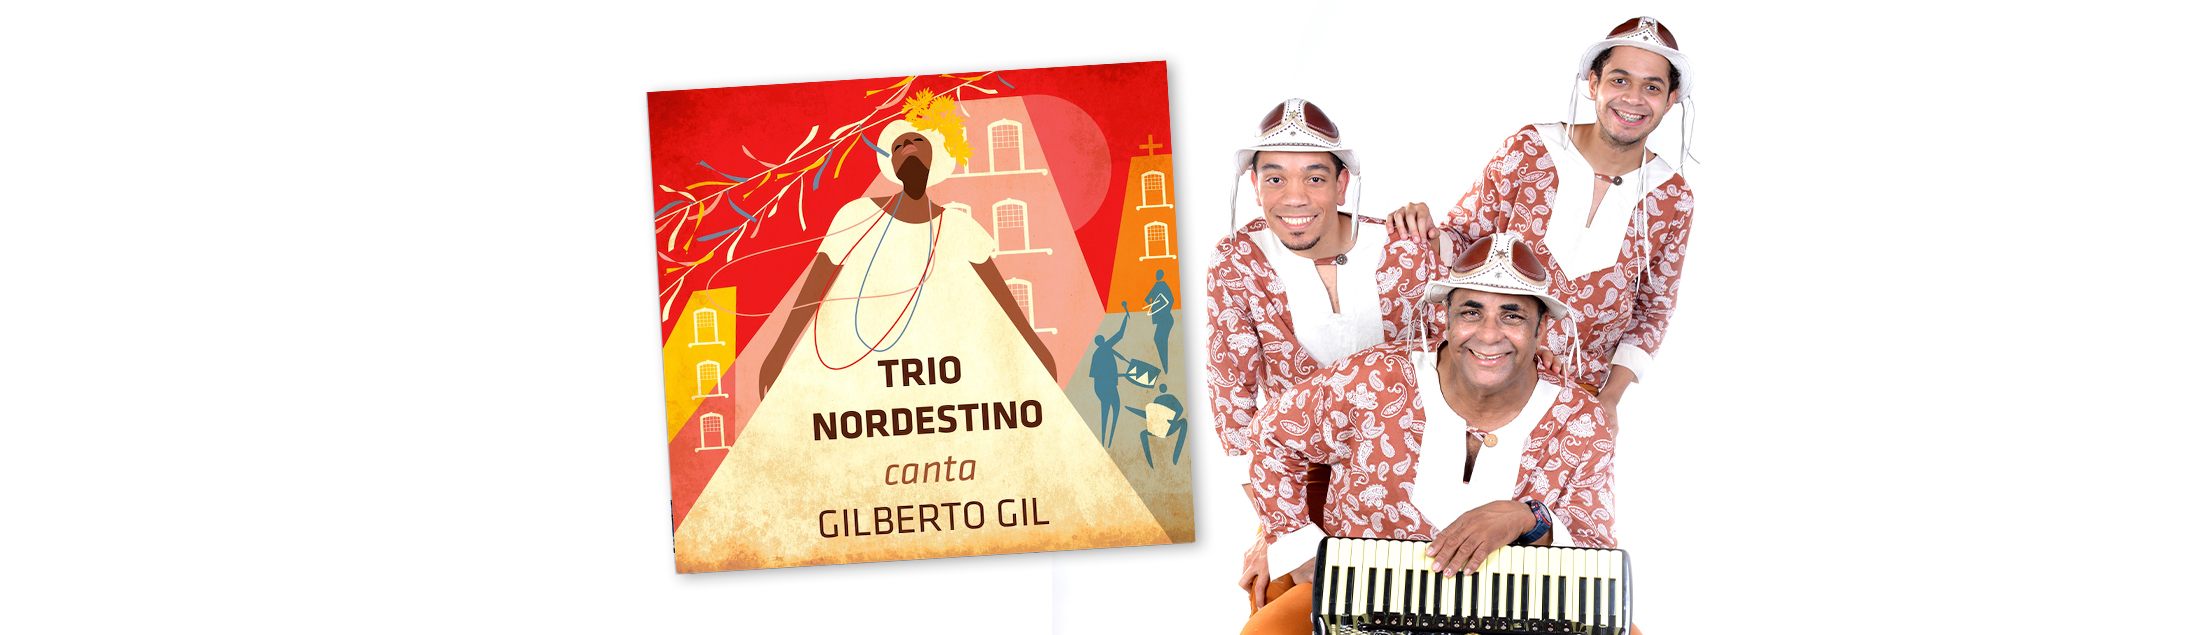 Trio Nordestino lança álbum em homenagem a Gilberto Gil